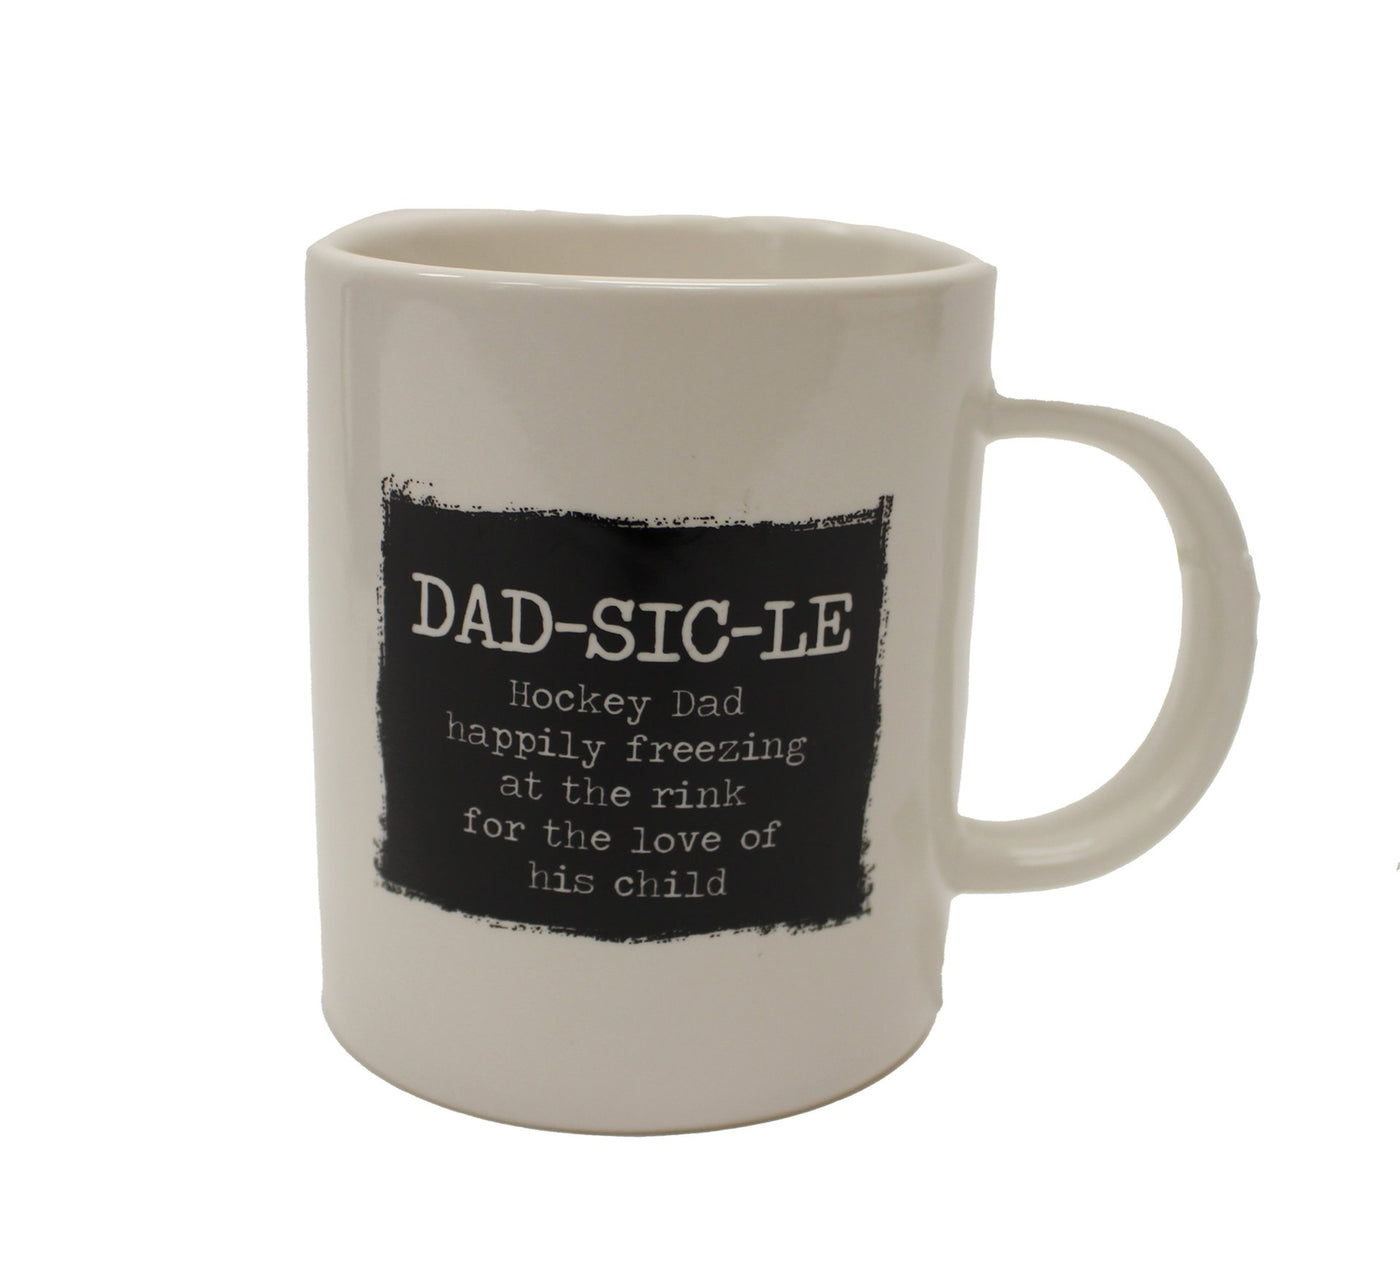 Dad-Sic-Le Mug